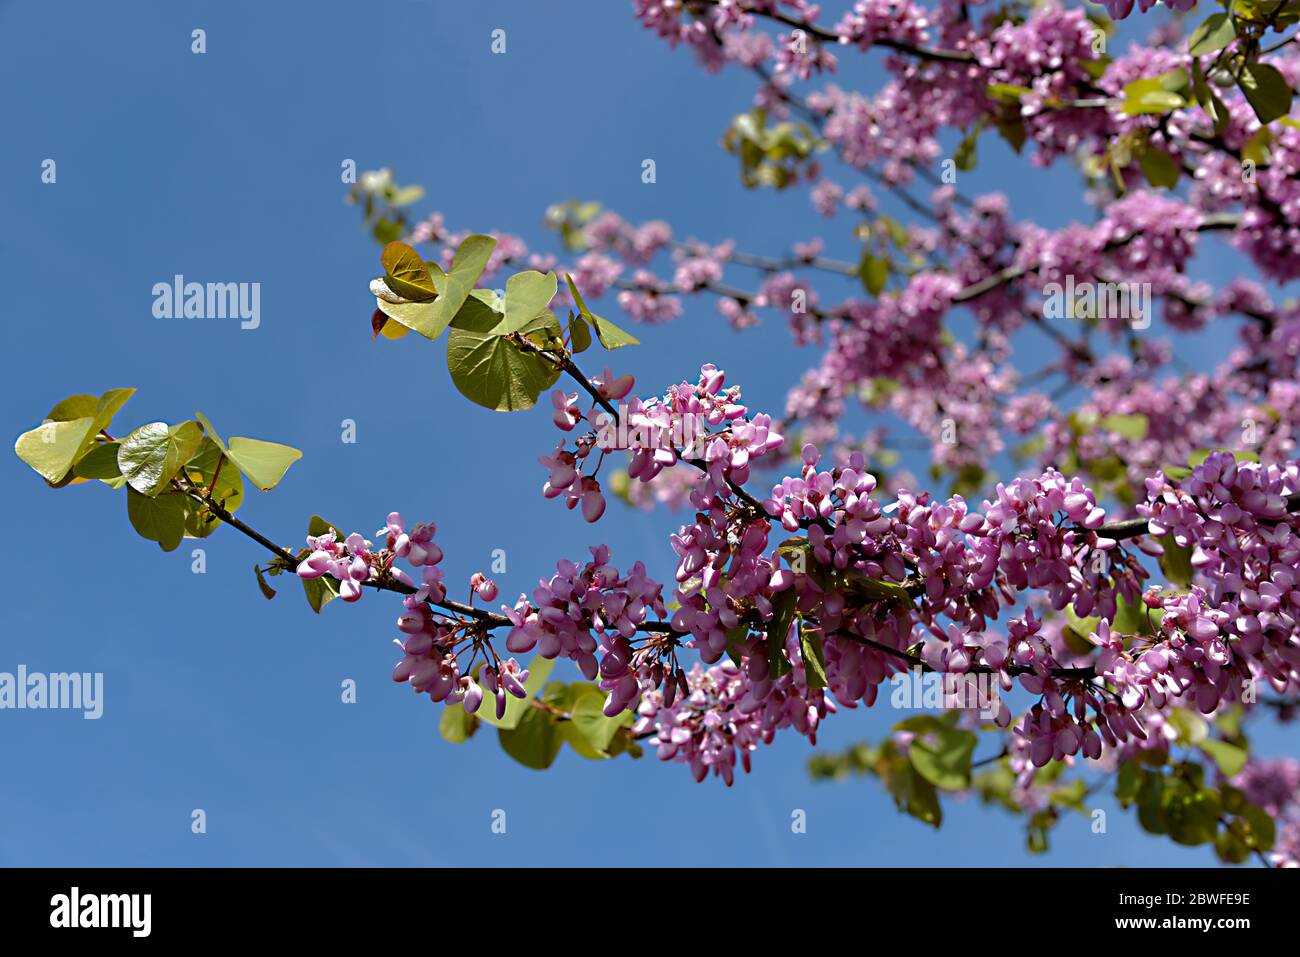 Gros plan fleurs et feuilles de l'arbre judas (Cerdis siliquastrum) sur fond bleu ciel Banque D'Images